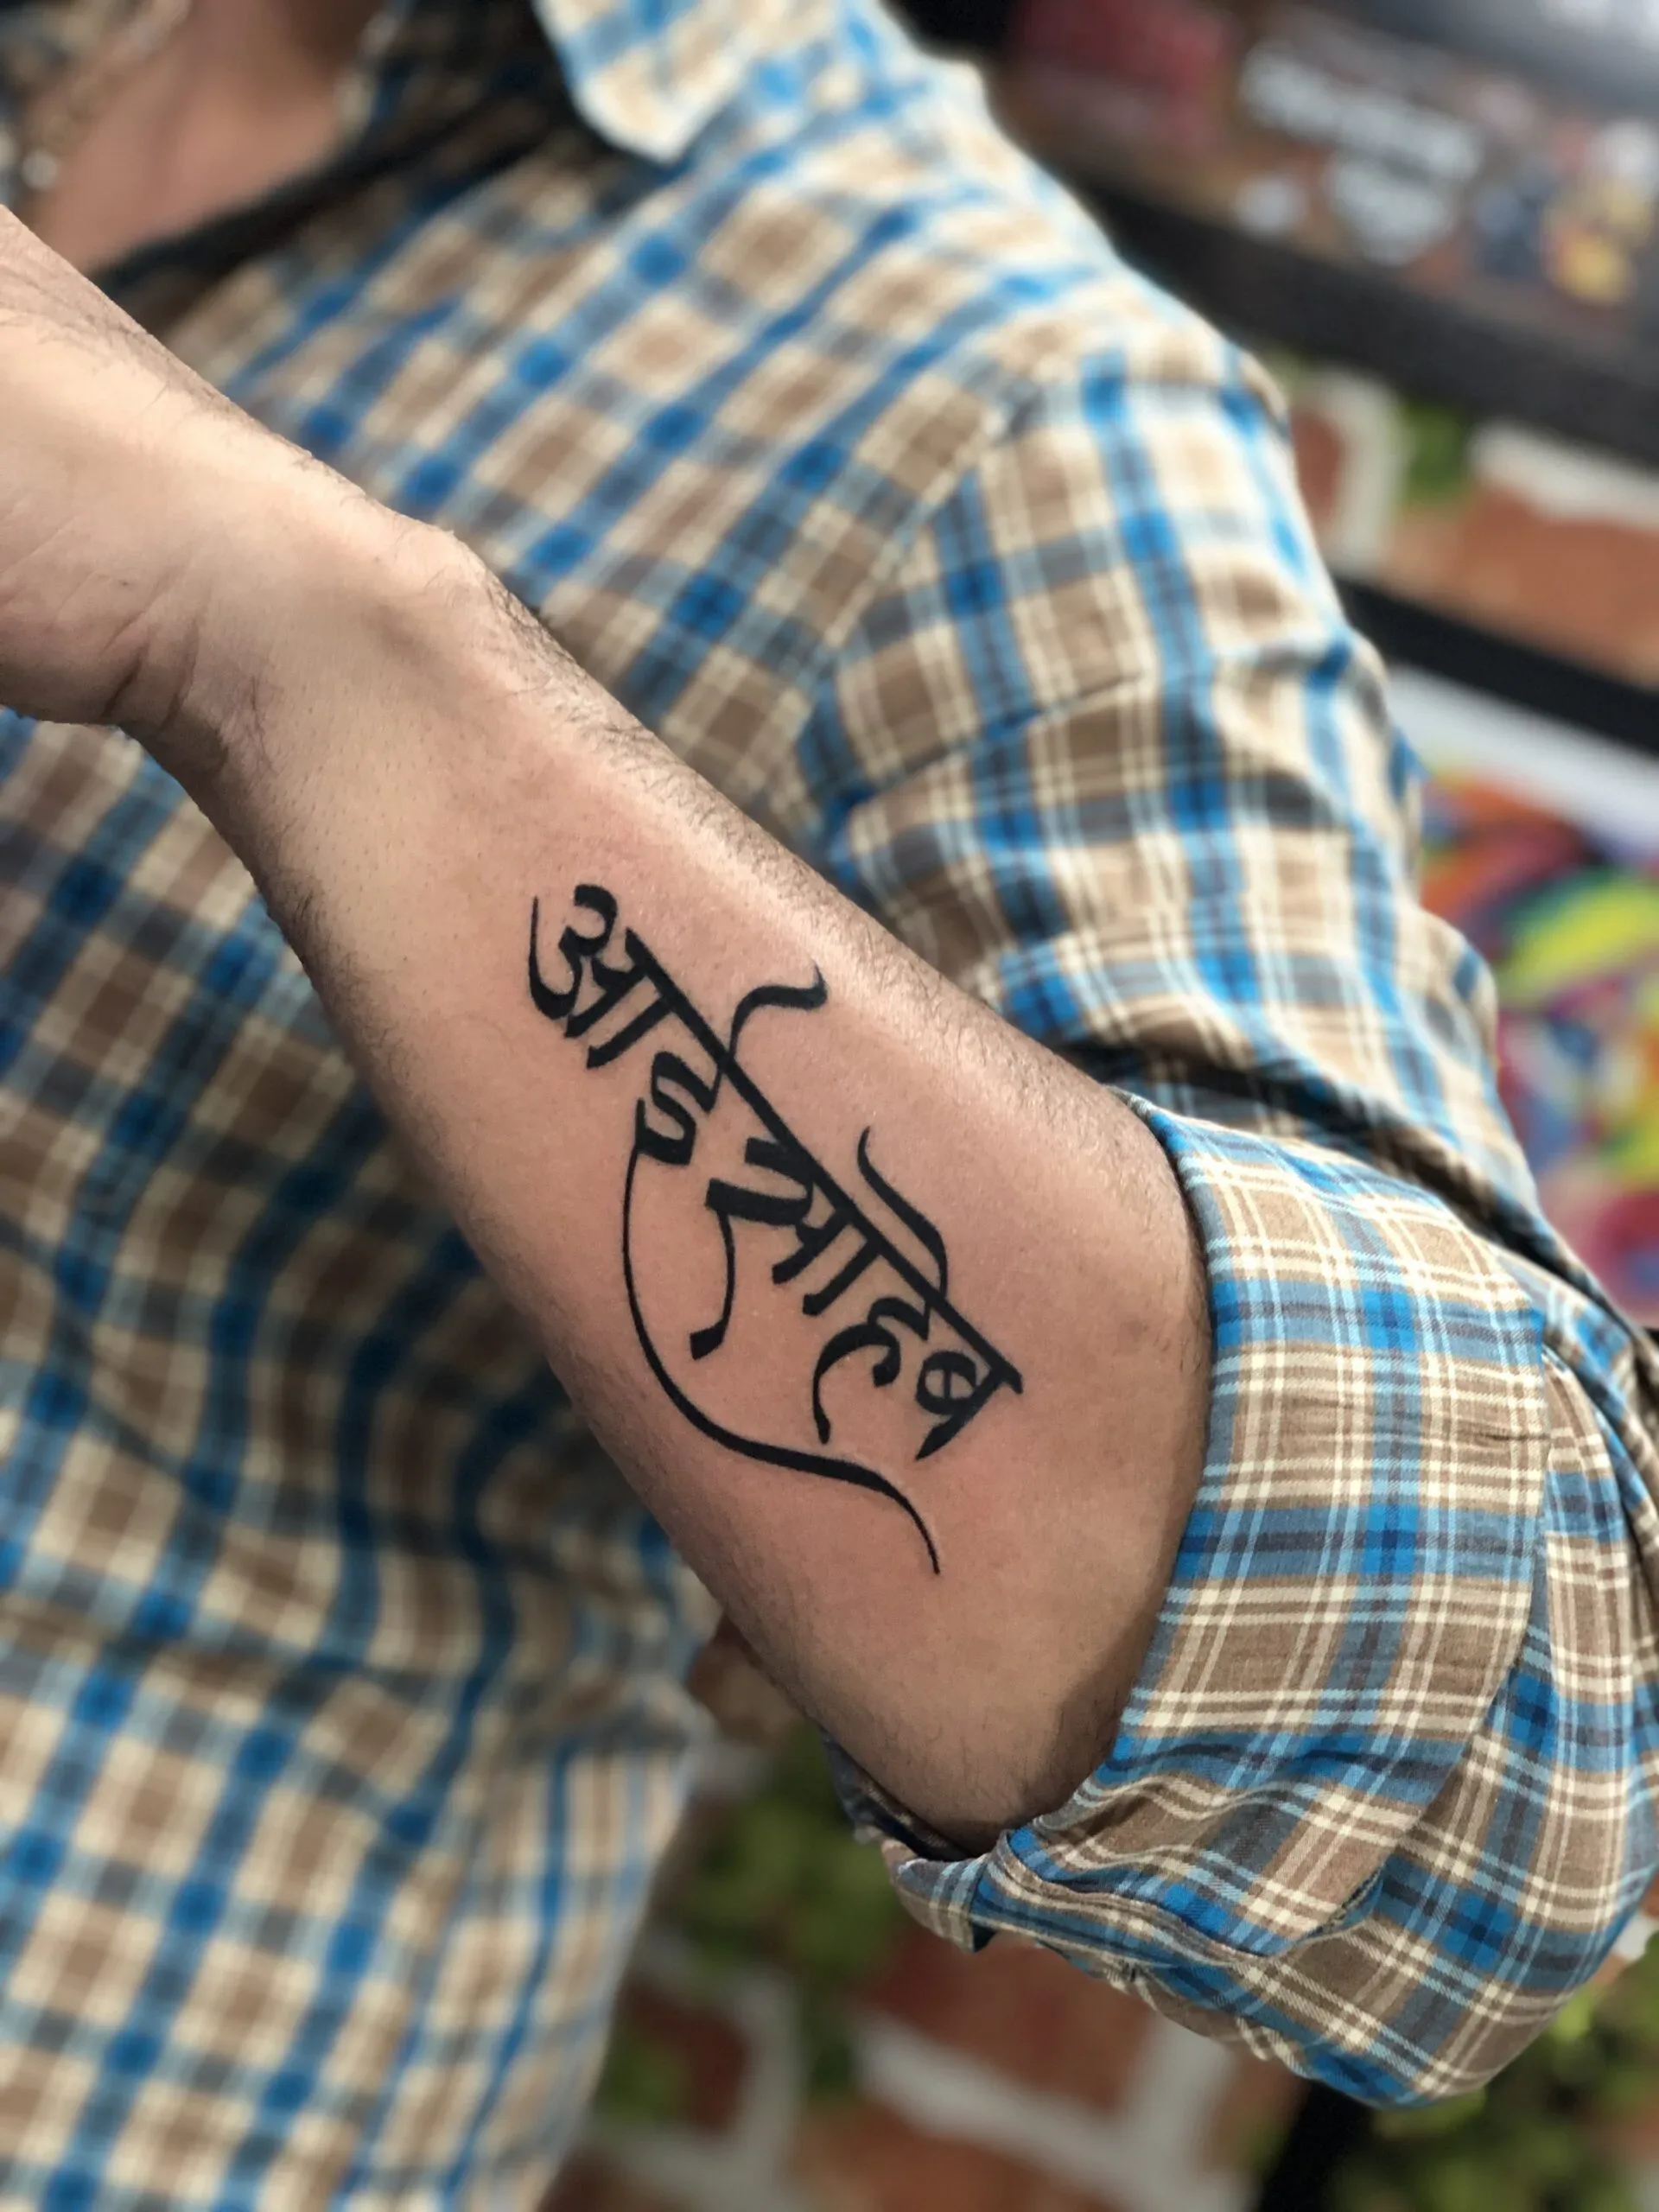 Adiyogi Tattoos - Done this marathi calligraphy name 